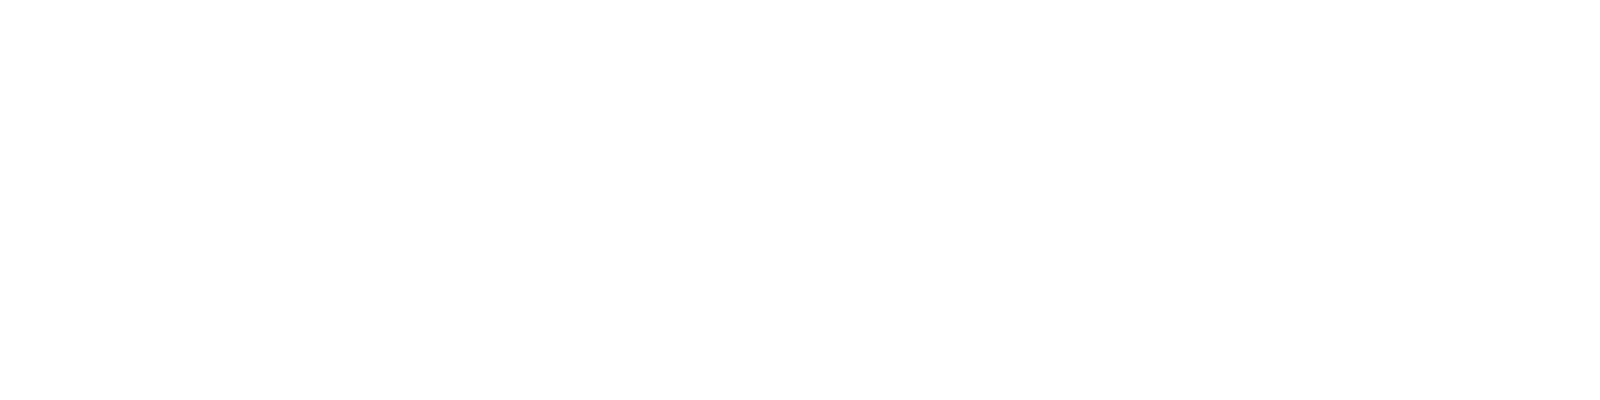 Welltower
 logo large for dark backgrounds (transparent PNG)